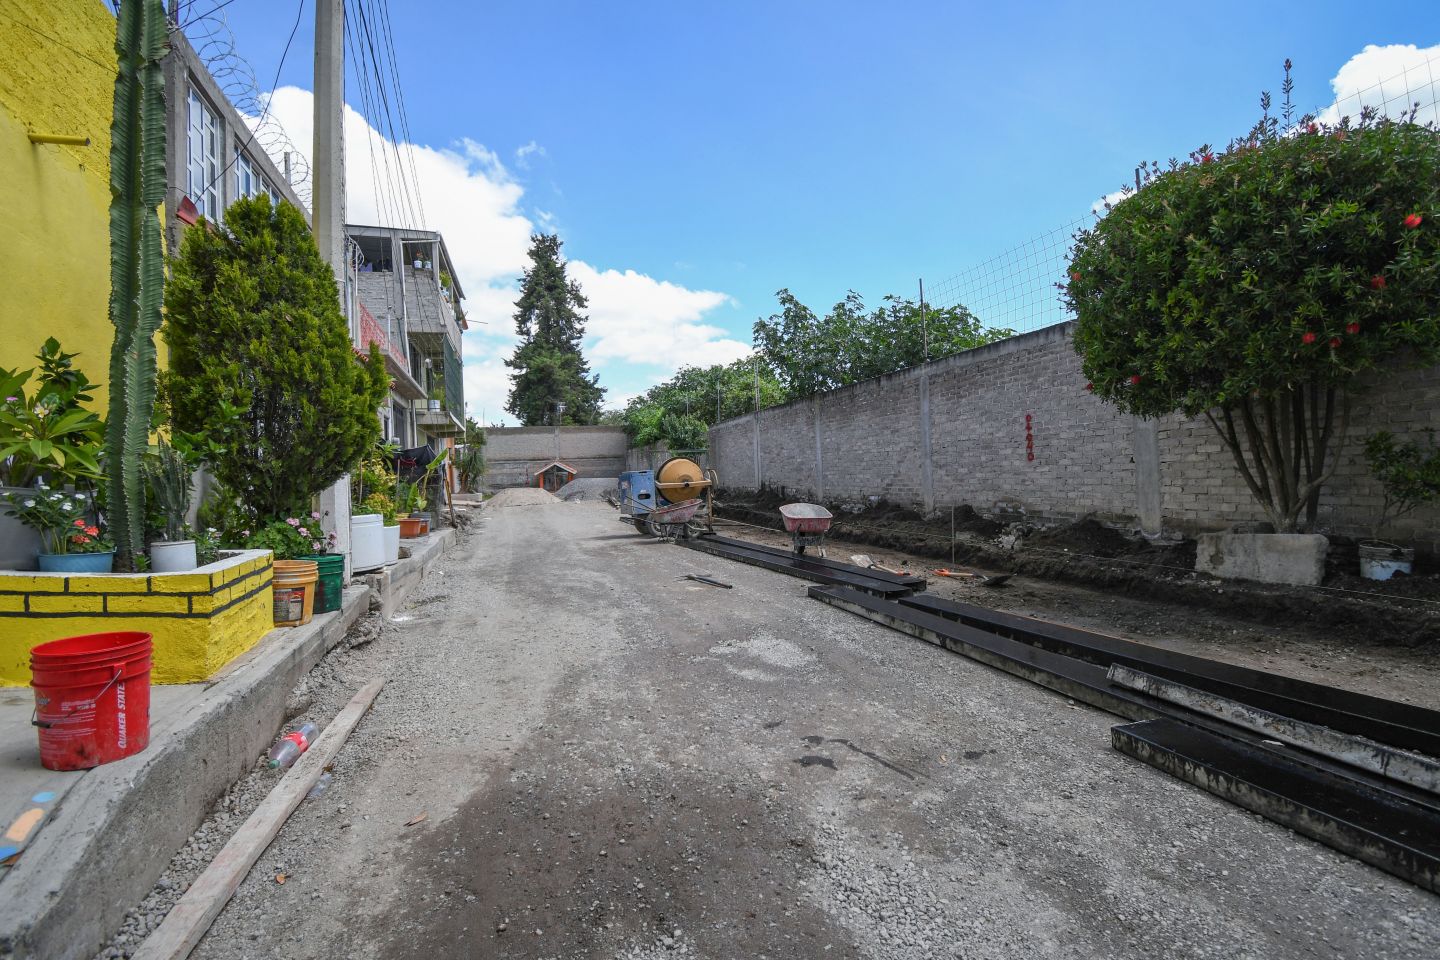 
Avanza pavimentaciones en Chimalhuacán